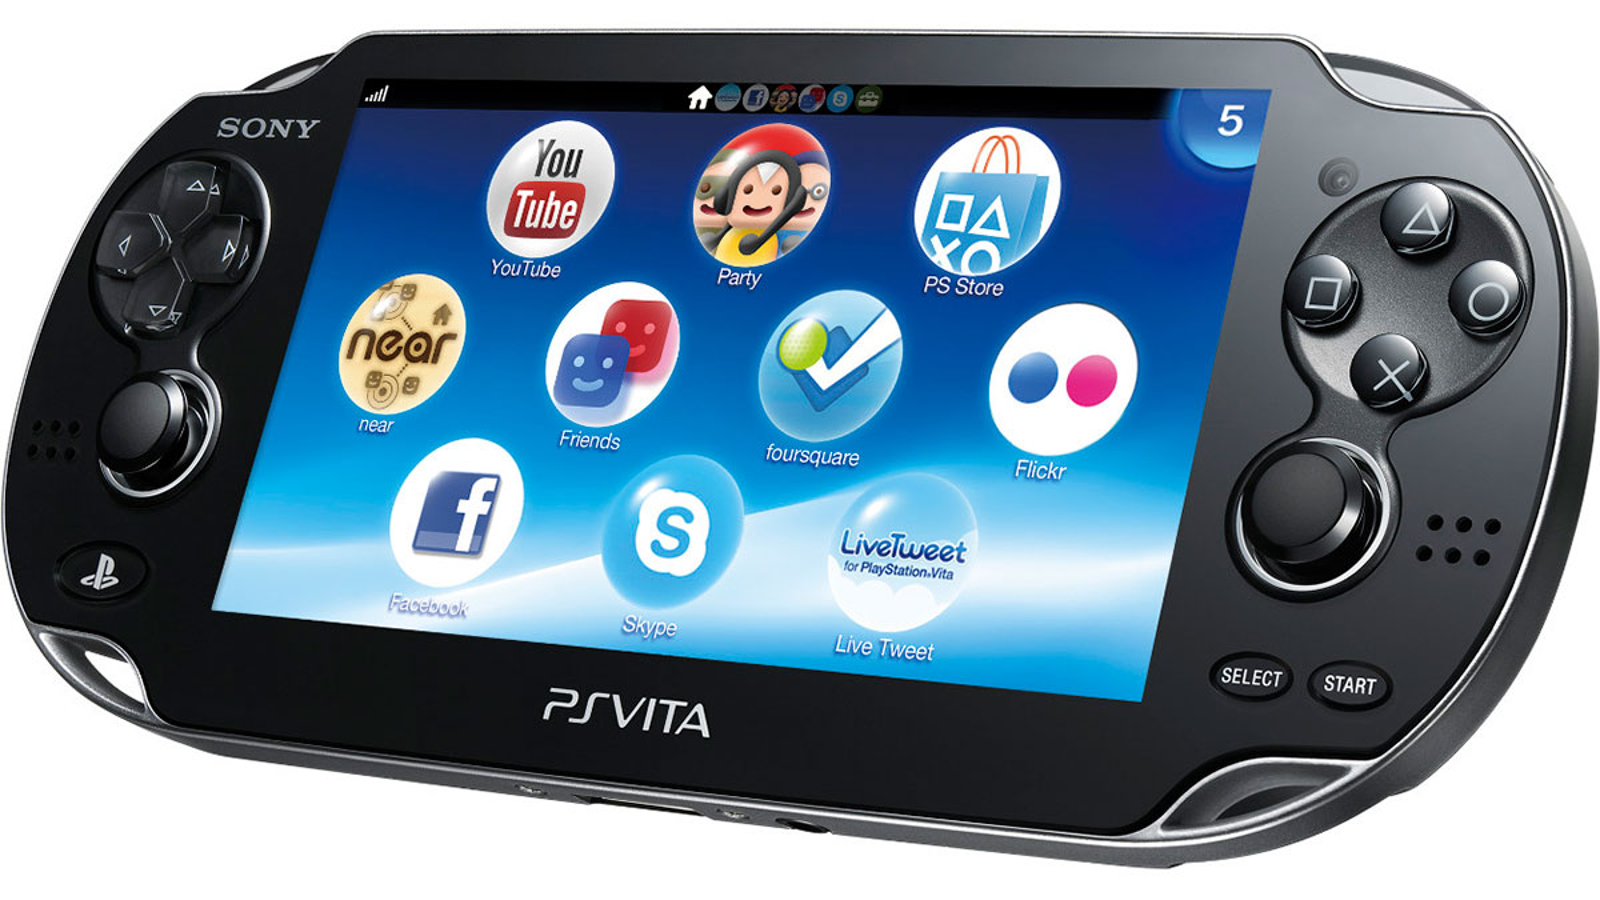 Sony actualiza el firmware de PS3 y para requerir la autenticación en dos pasos al iniciar sesión PSN | Eurogamer.es